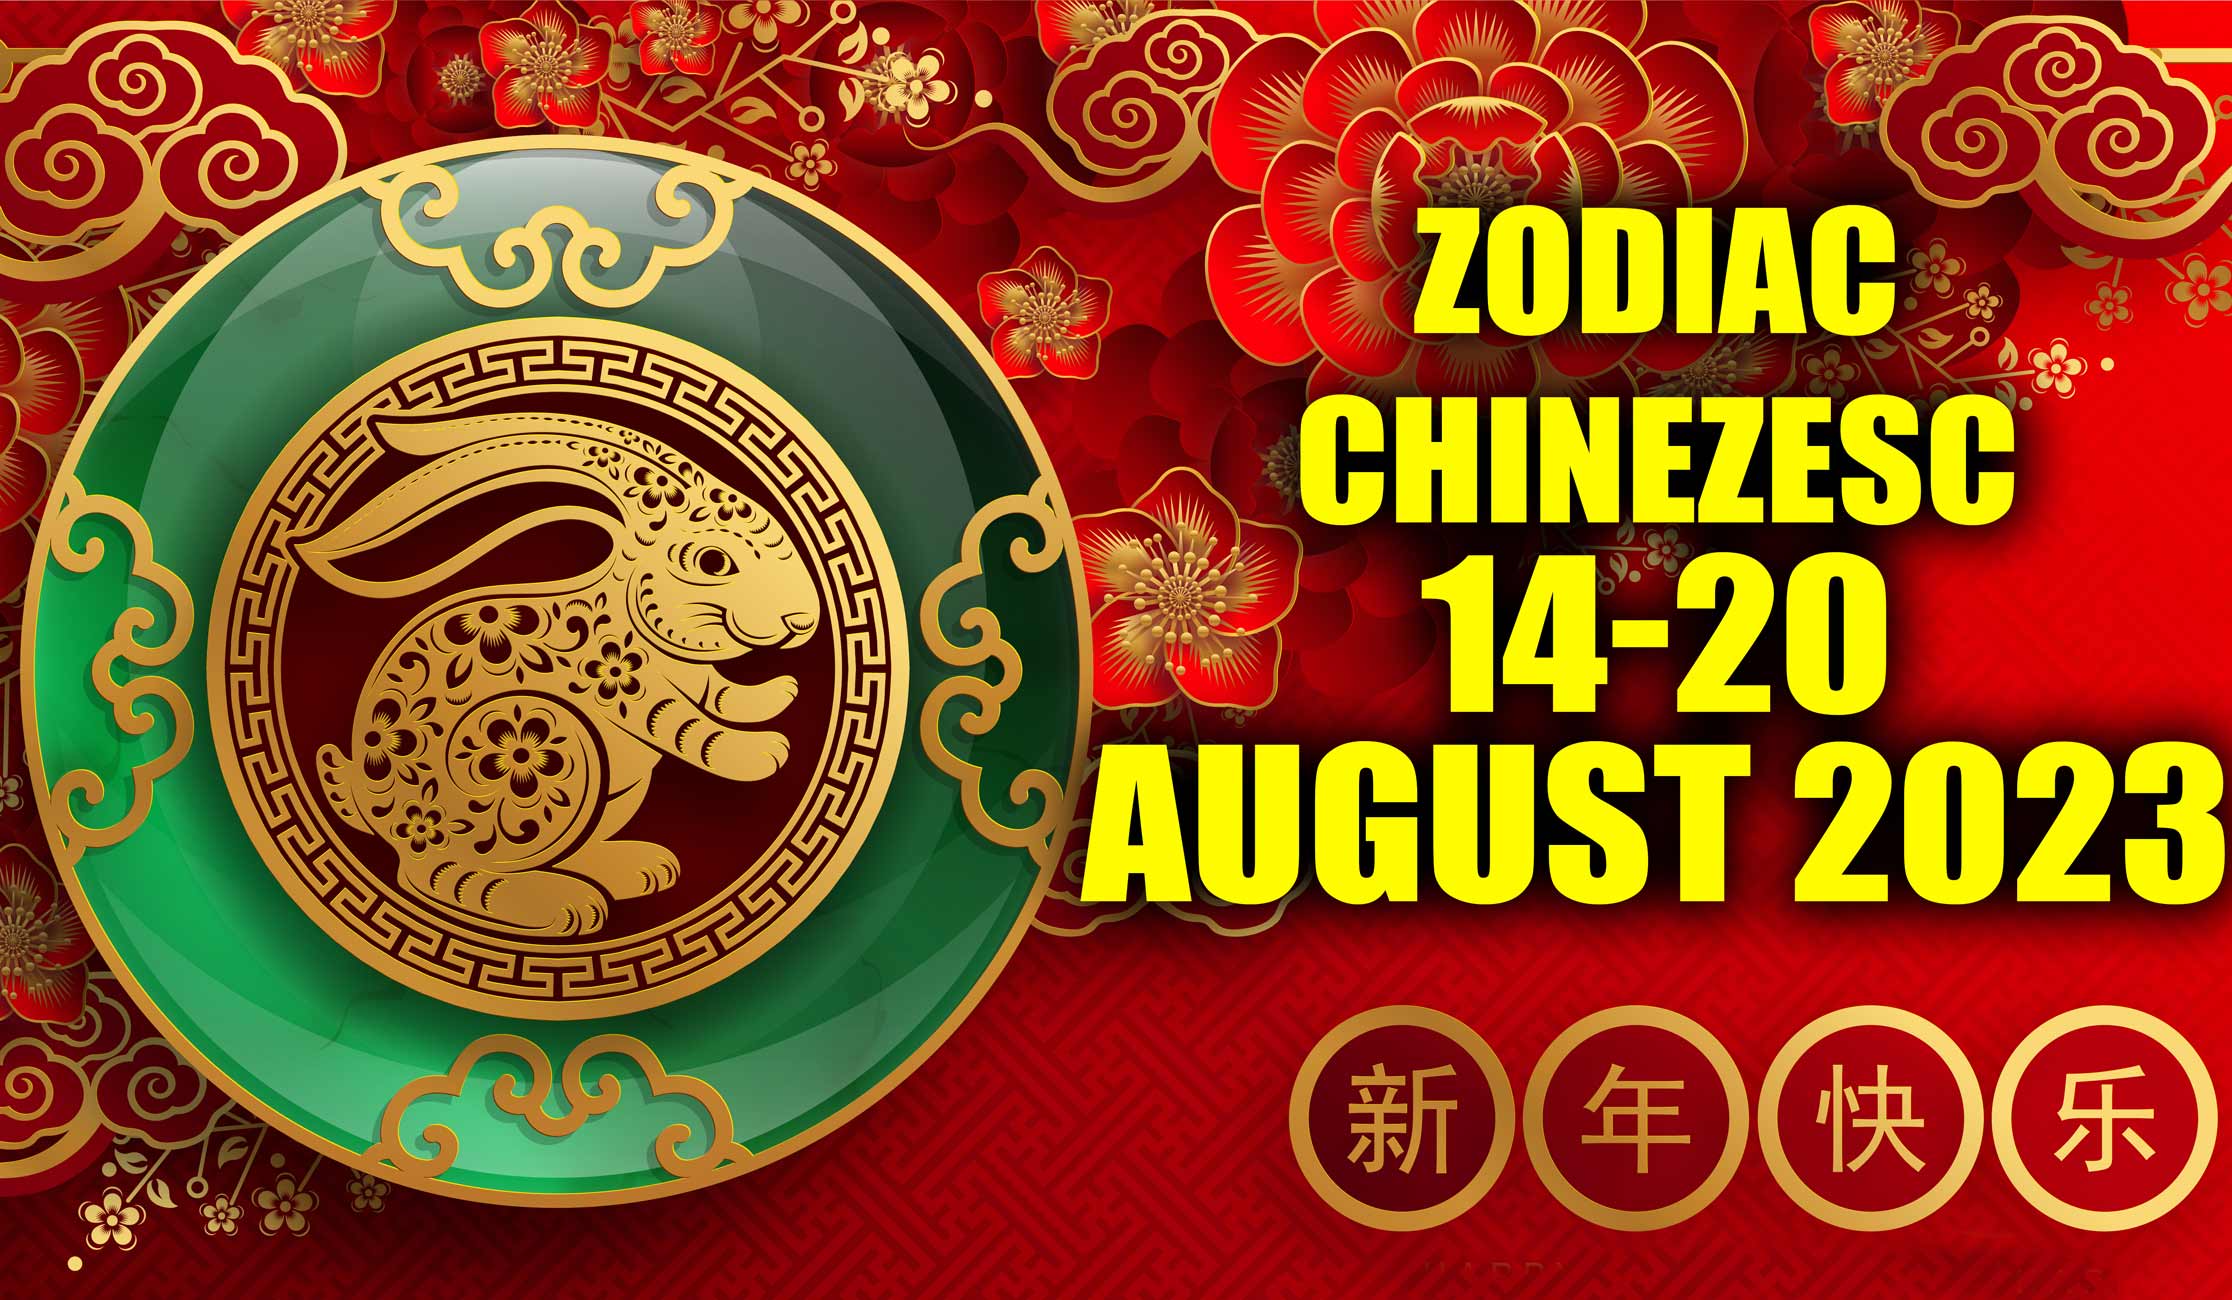 Zodiac-chinezesc-14-20-August-2023